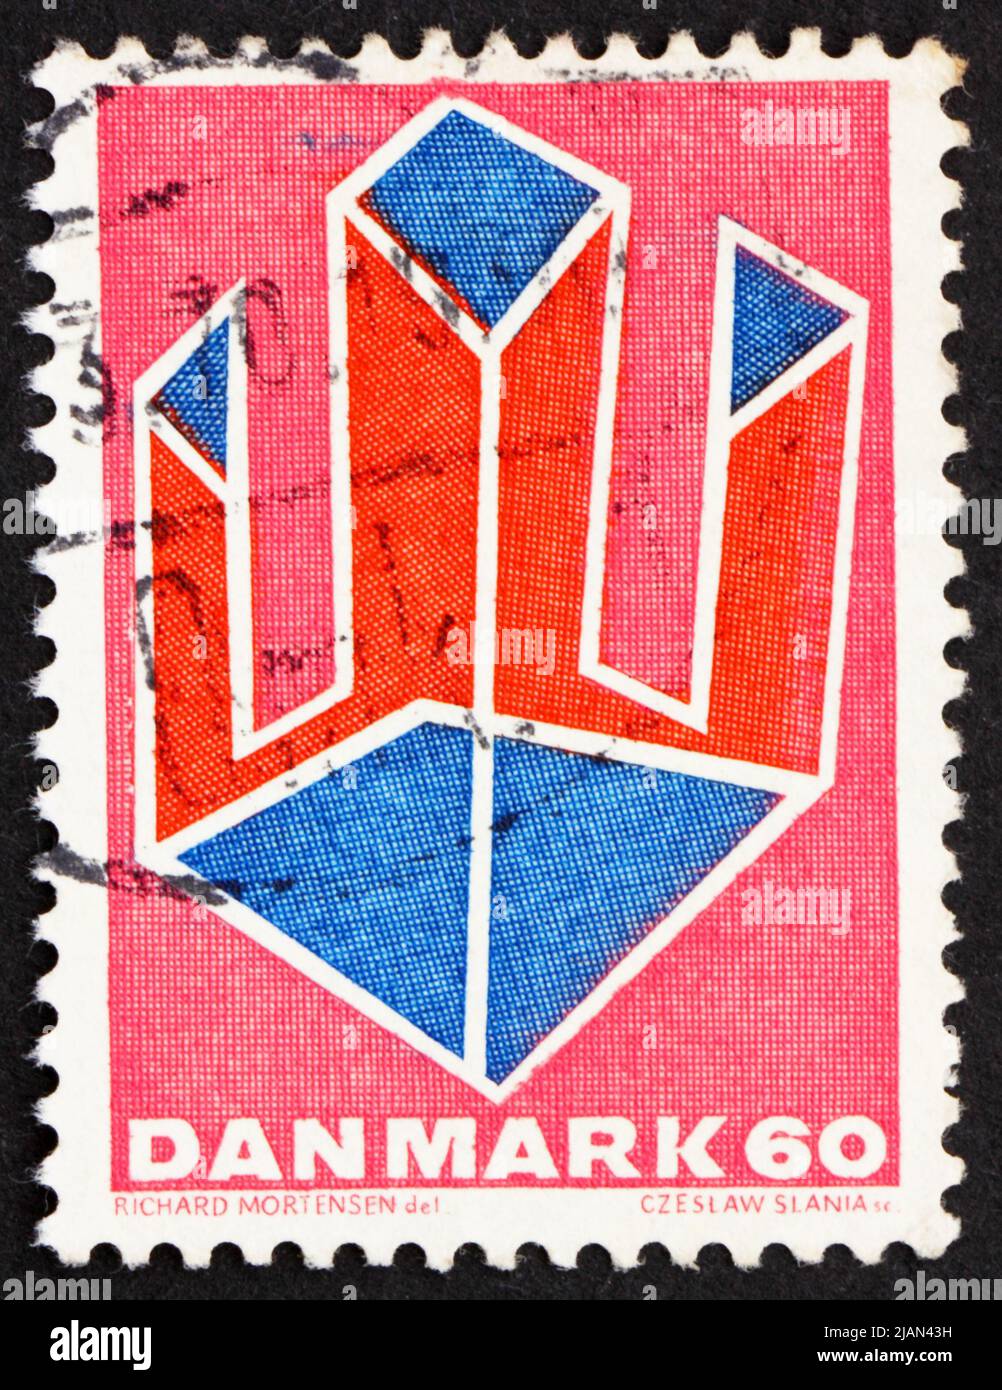 DANIMARCA - CIRCA 1969: Un francobollo stampato in Danimarca mostra Abstract Design, pubblicato in onore di Valdemar Poulsen, Ingegnere elettrico e inventore, cir Foto Stock